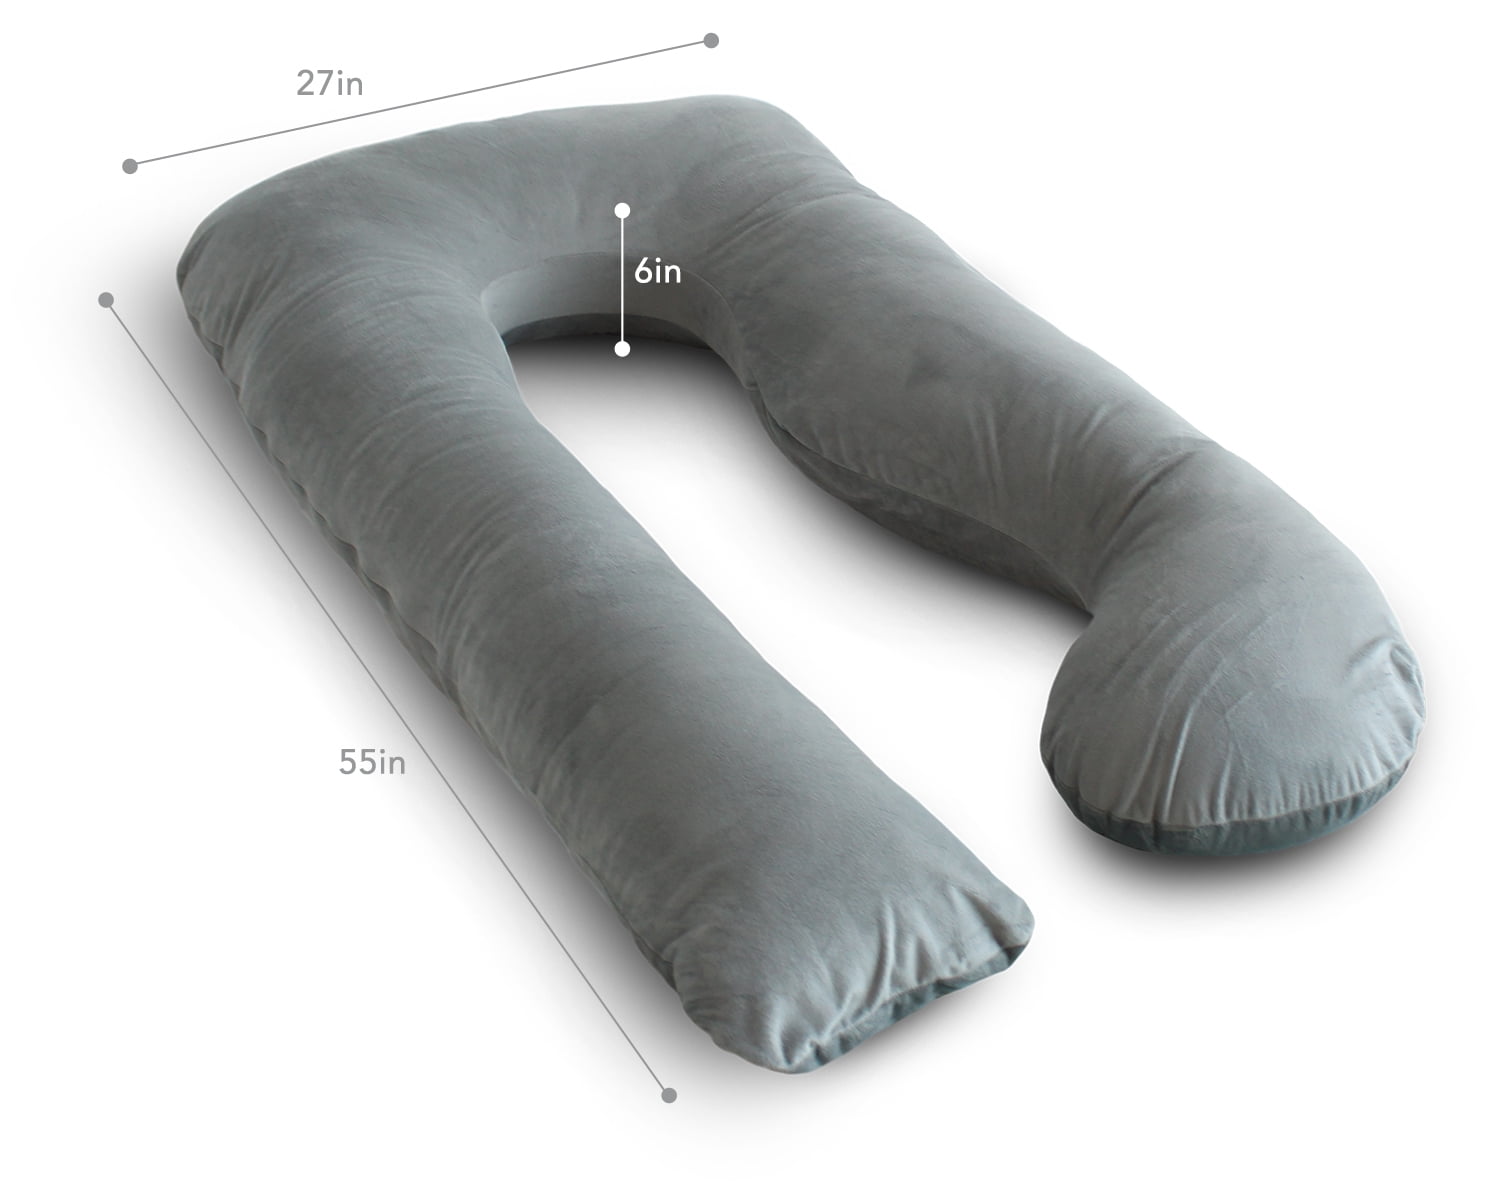 PharMeDoc Pregnancy Pillow with Velvet Cover - U Shaped Body Pillow - Full Body Maternity Pillow for Pregnant Women, 55"L x 27"W